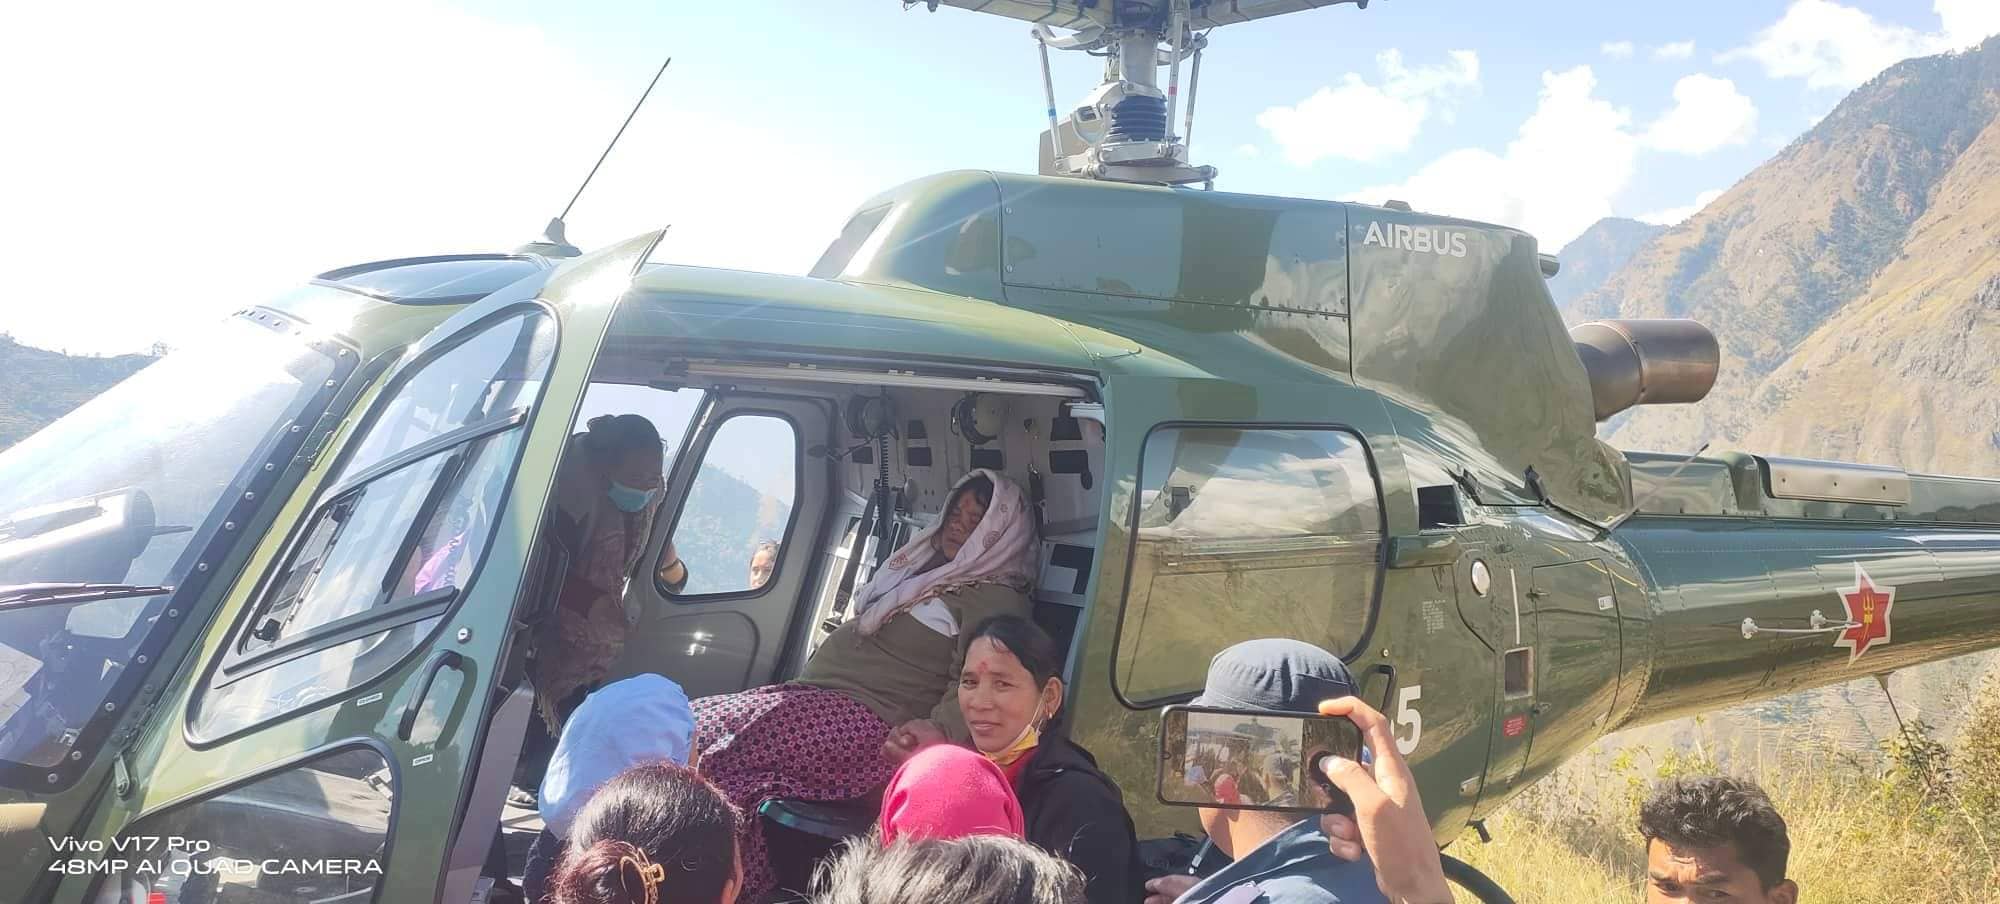 स्थानीय स्वास्थ्य चौकीमा उपचार सम्भव नभएपछि गर्भवती महिलाको हेलिकप्टरबाट उद्धार